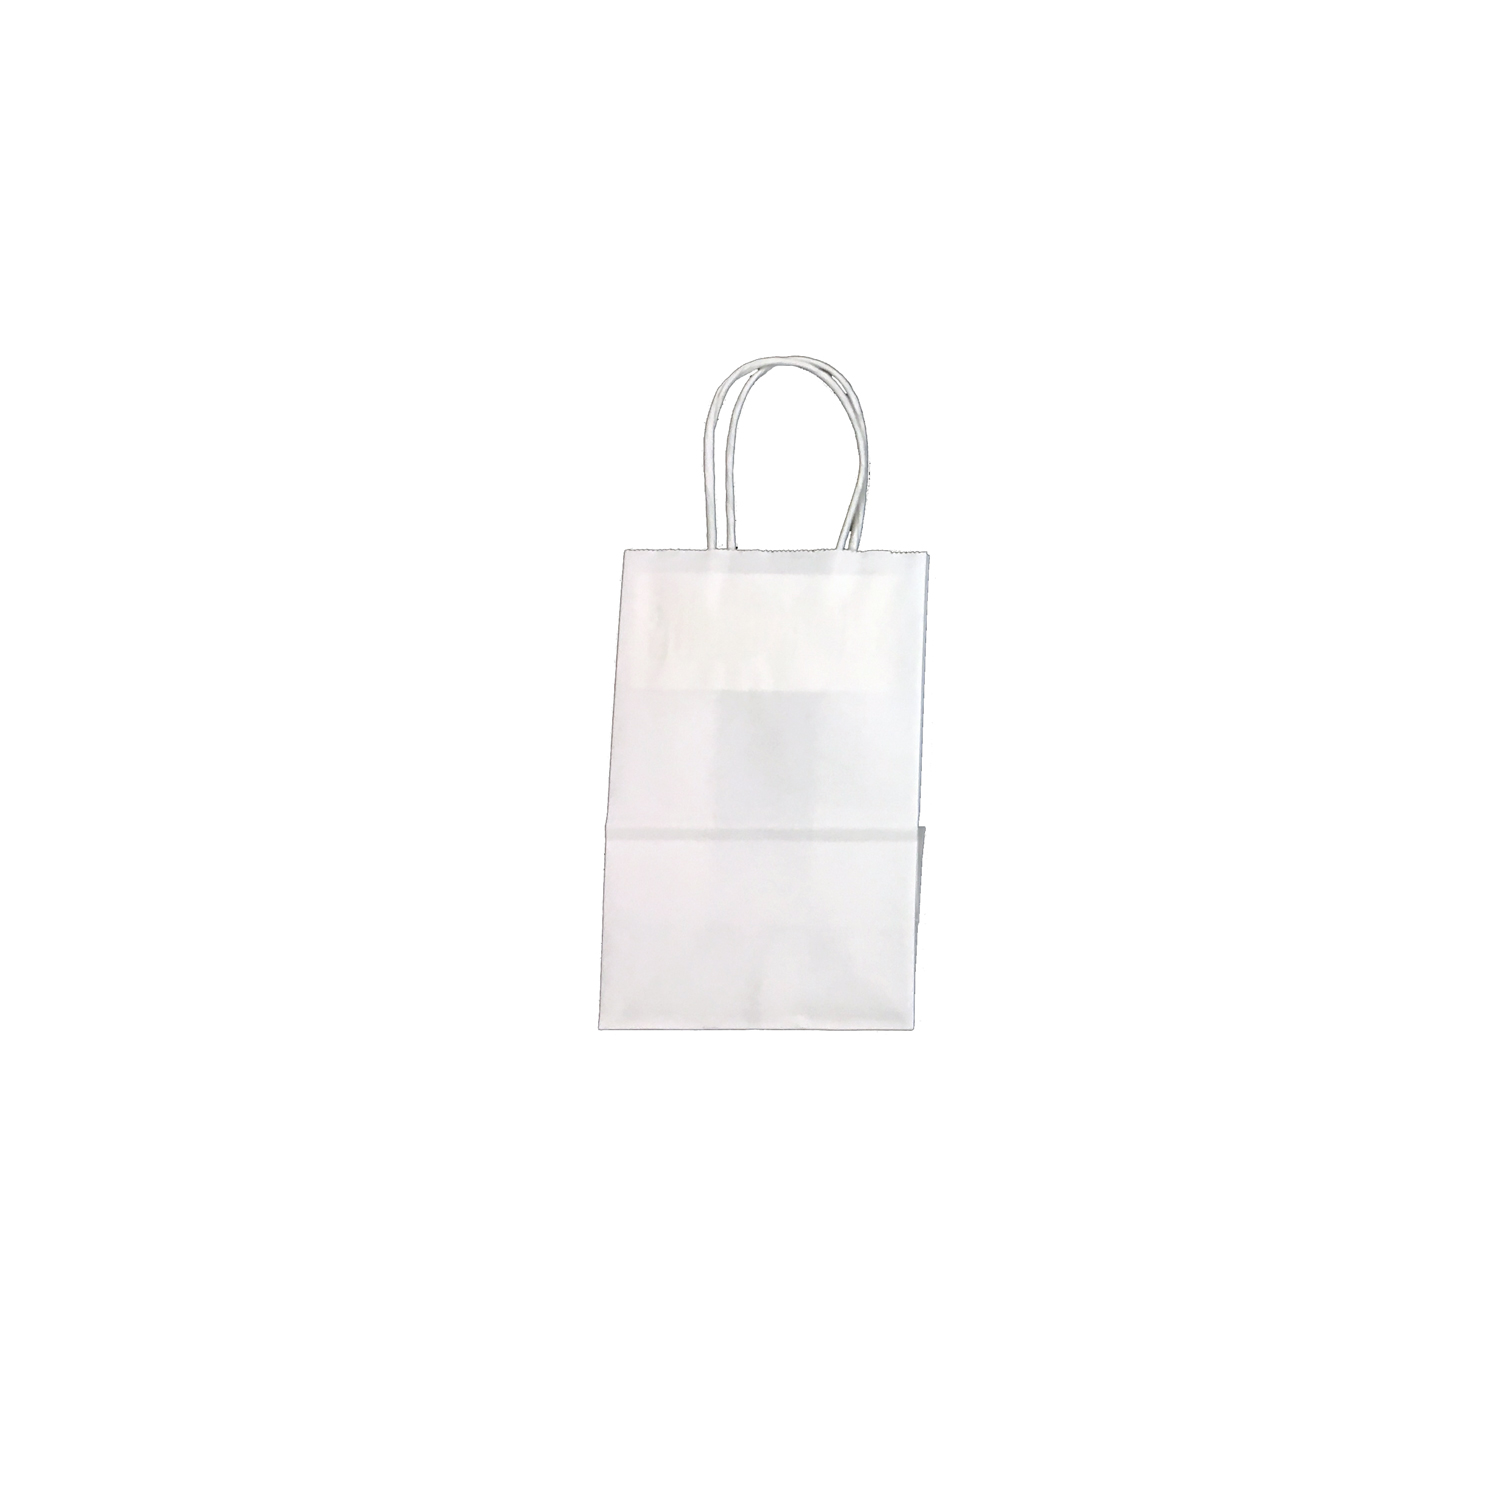 White 5 x 3 x 8 Midget Shopping Bags - WG Ellerkamp